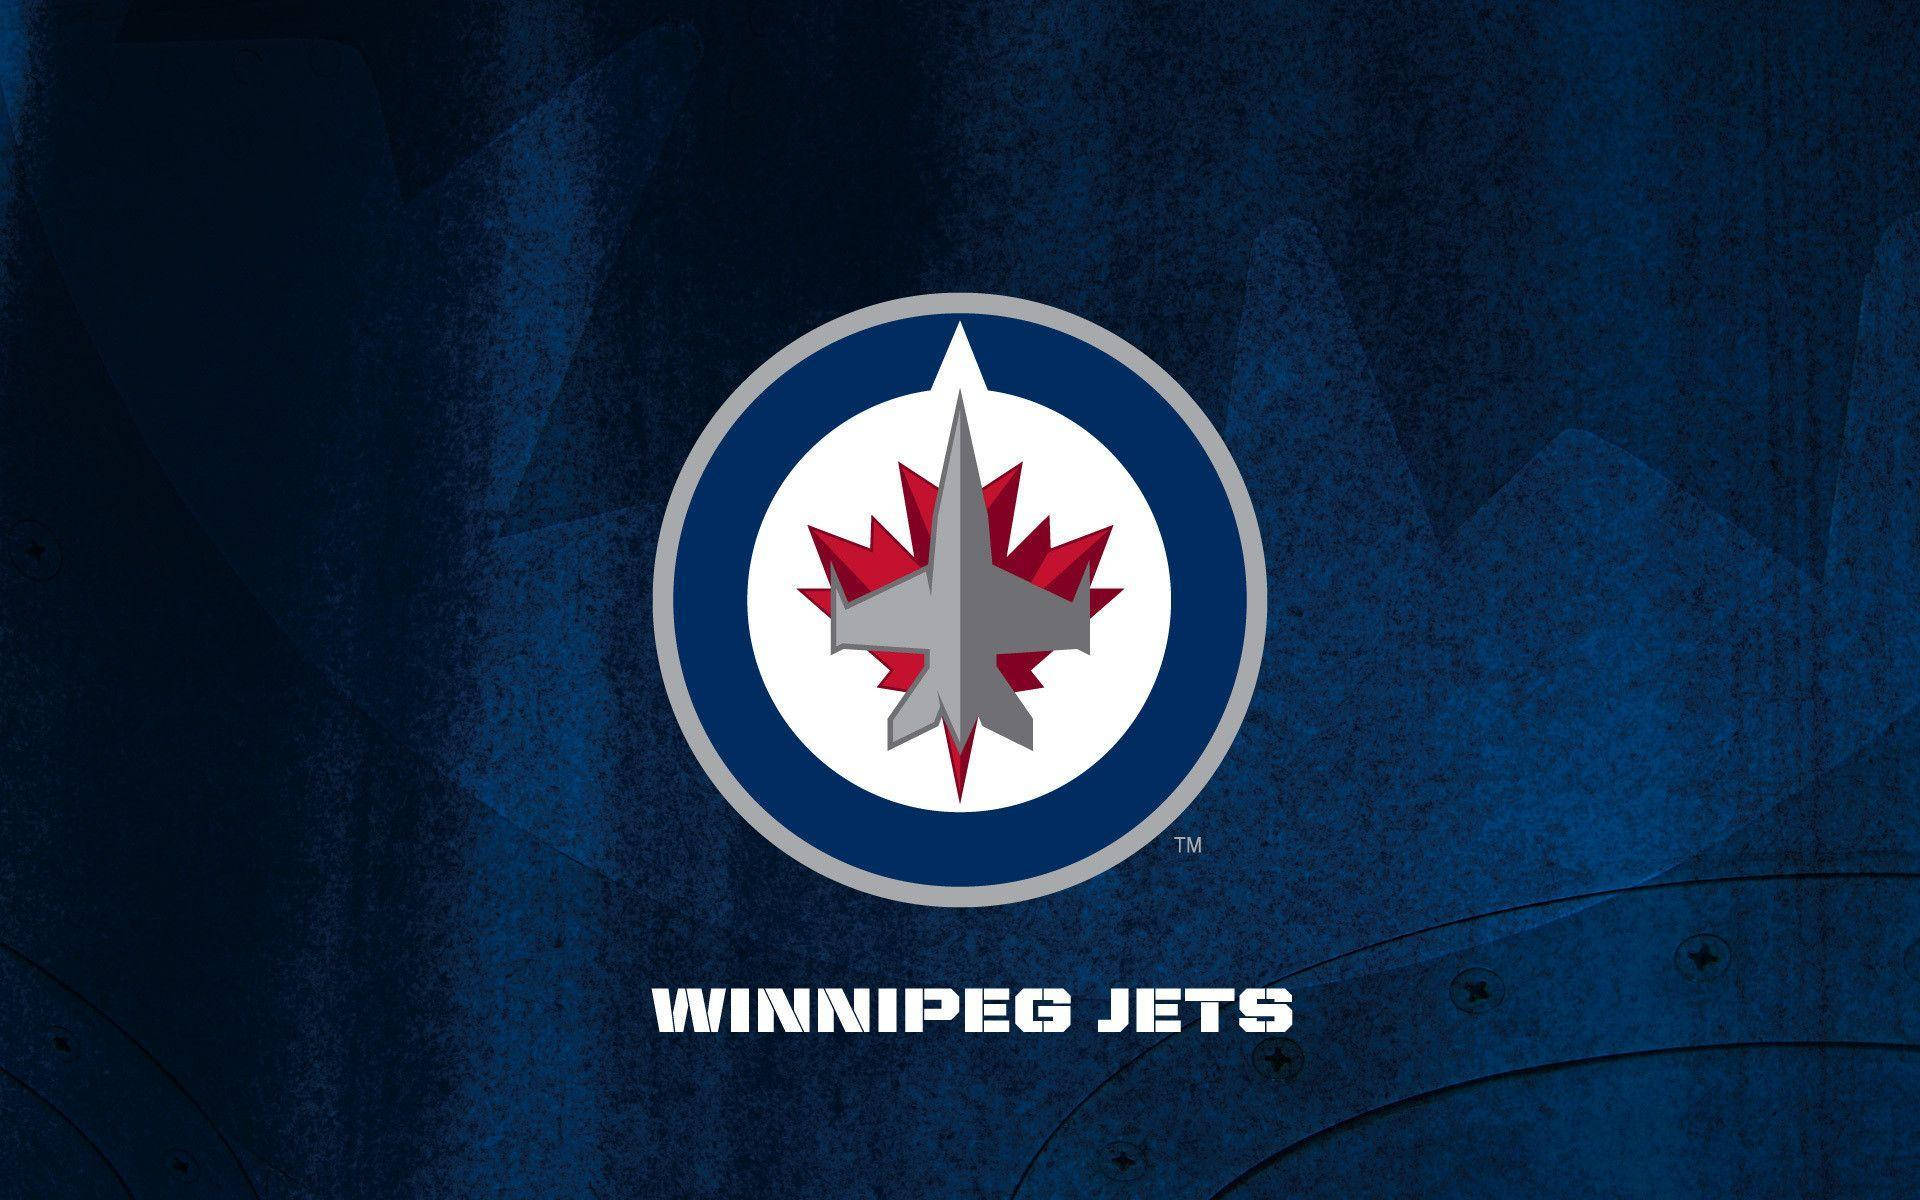 Winnipeg Jets Hockey Team Logo Wallpaper